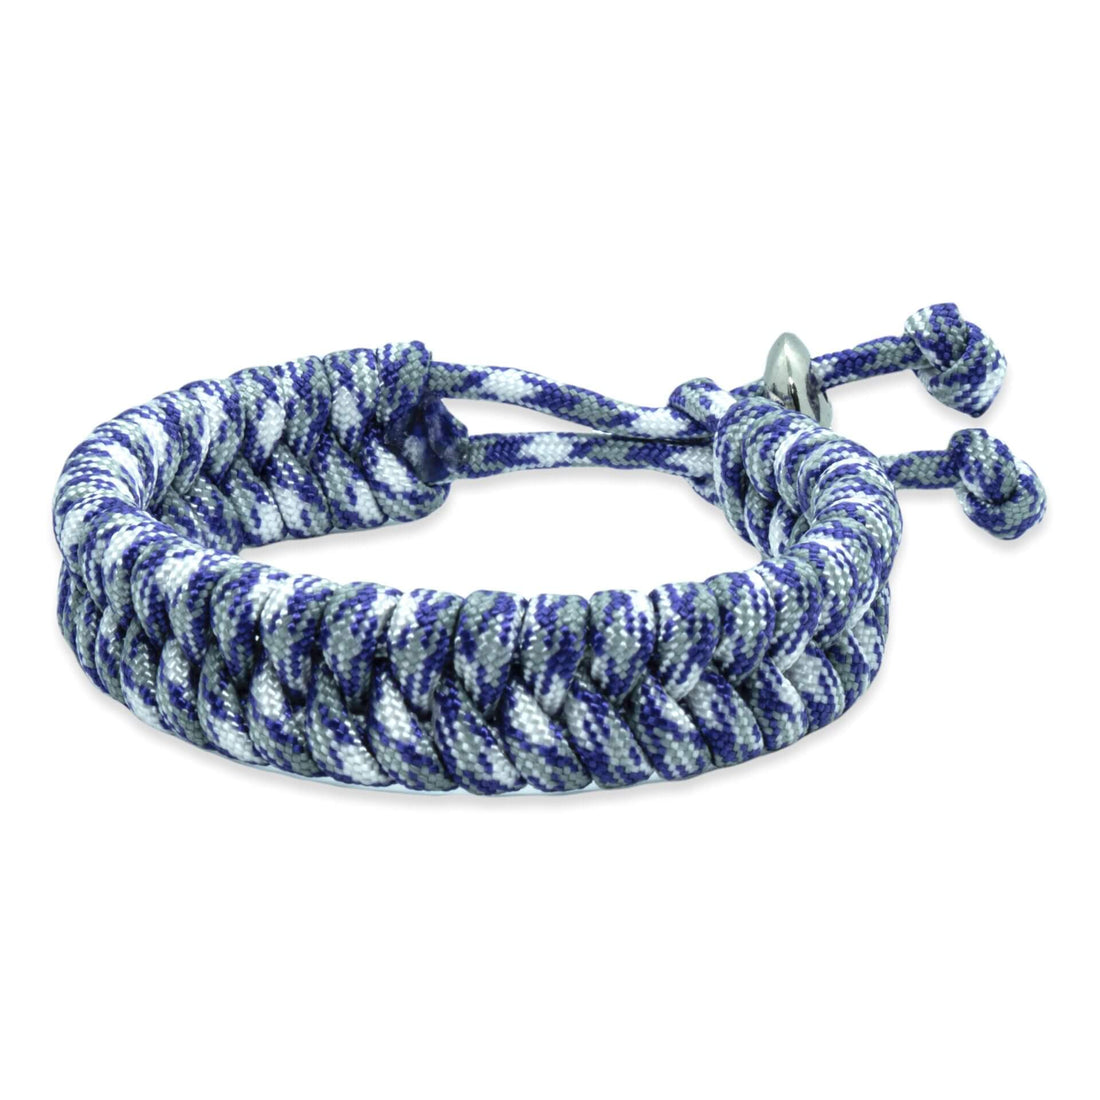 Zweedse staart armband - Blauw Wit Grijze touw kleuren